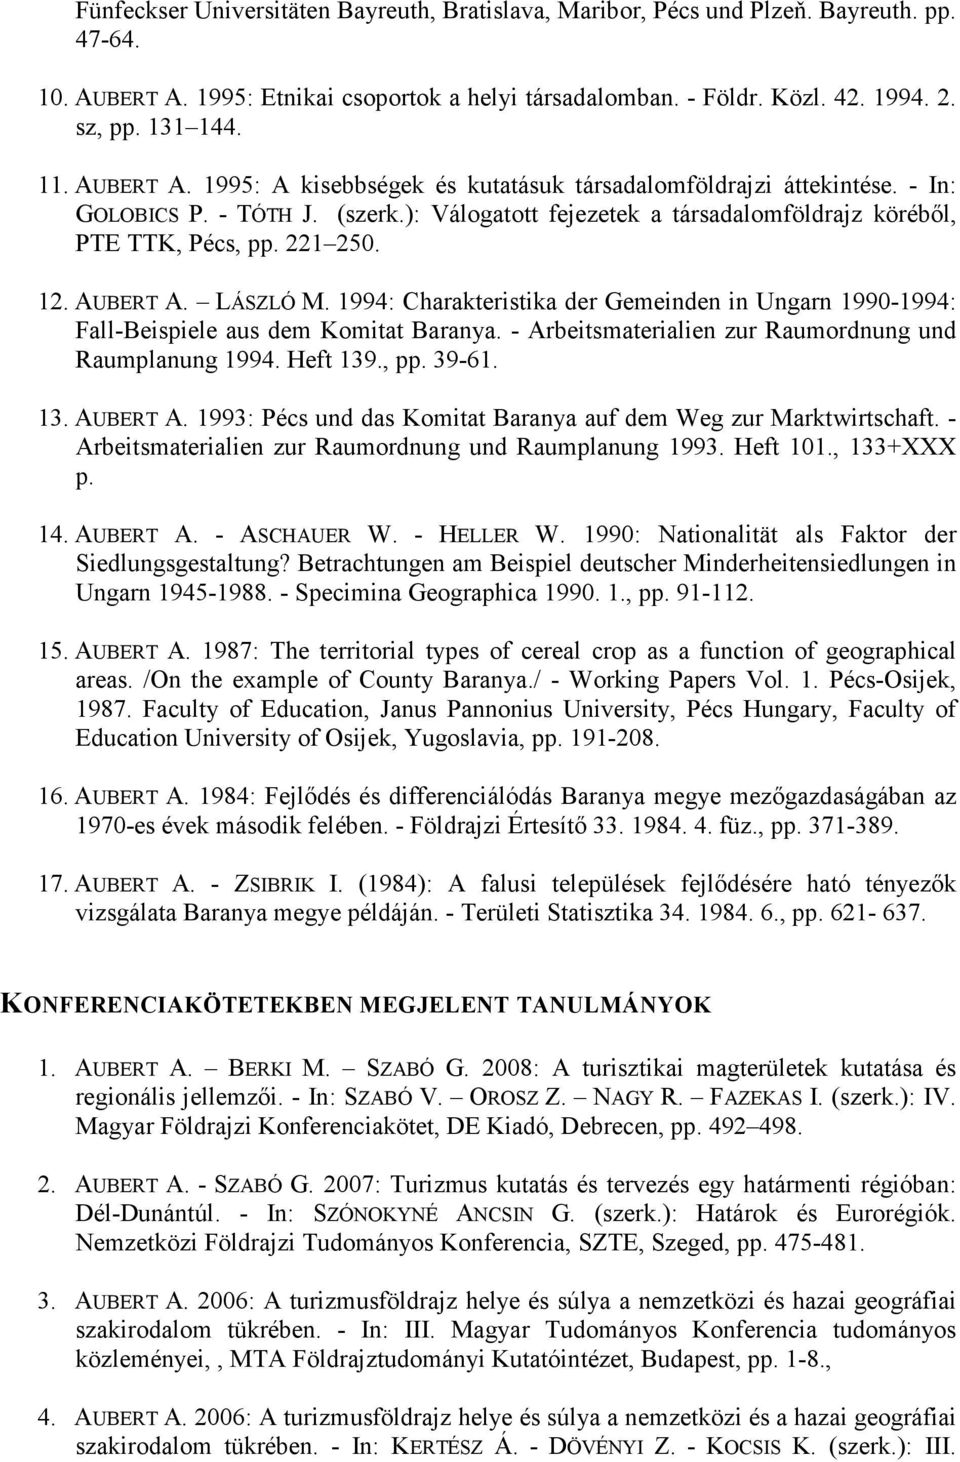 AUBERT A. LÁSZLÓ M. 1994: Charakteristika der Gemeinden in Ungarn 1990-1994: Fall-Beispiele aus dem Komitat Baranya. - Arbeitsmaterialien zur Raumordnung und Raumplanung 1994. Heft 139., pp. 39-61.